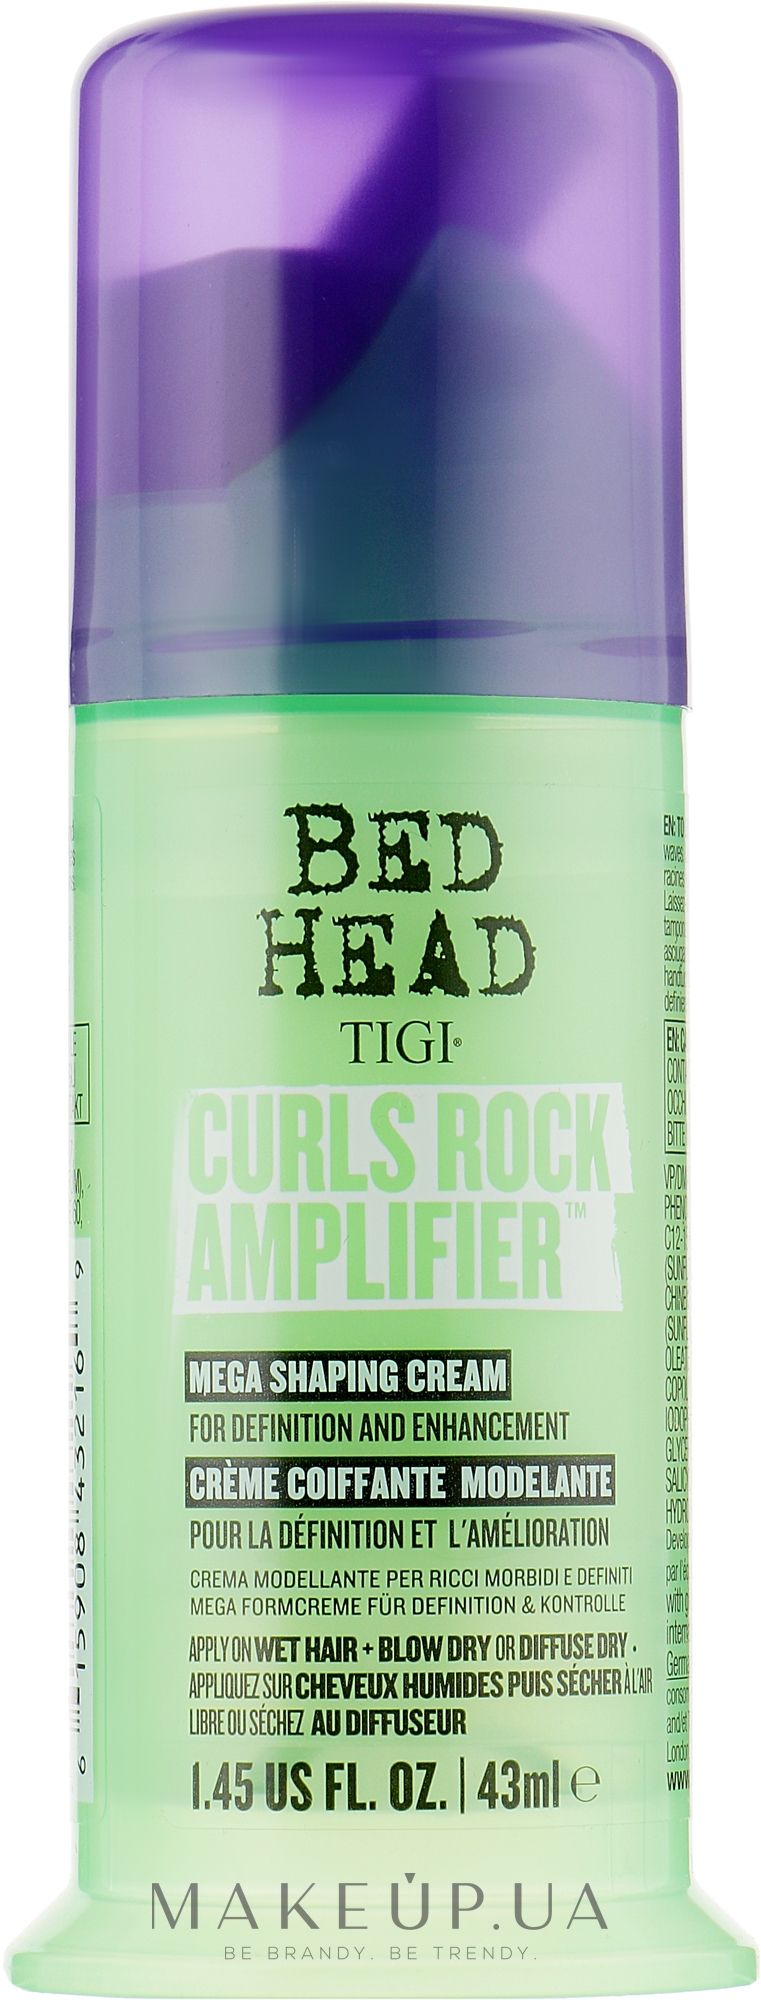 Крем для вьющихся волос - Tigi Bed Head Curls Rock Amplifier Curly Hair Cream — фото 43ml